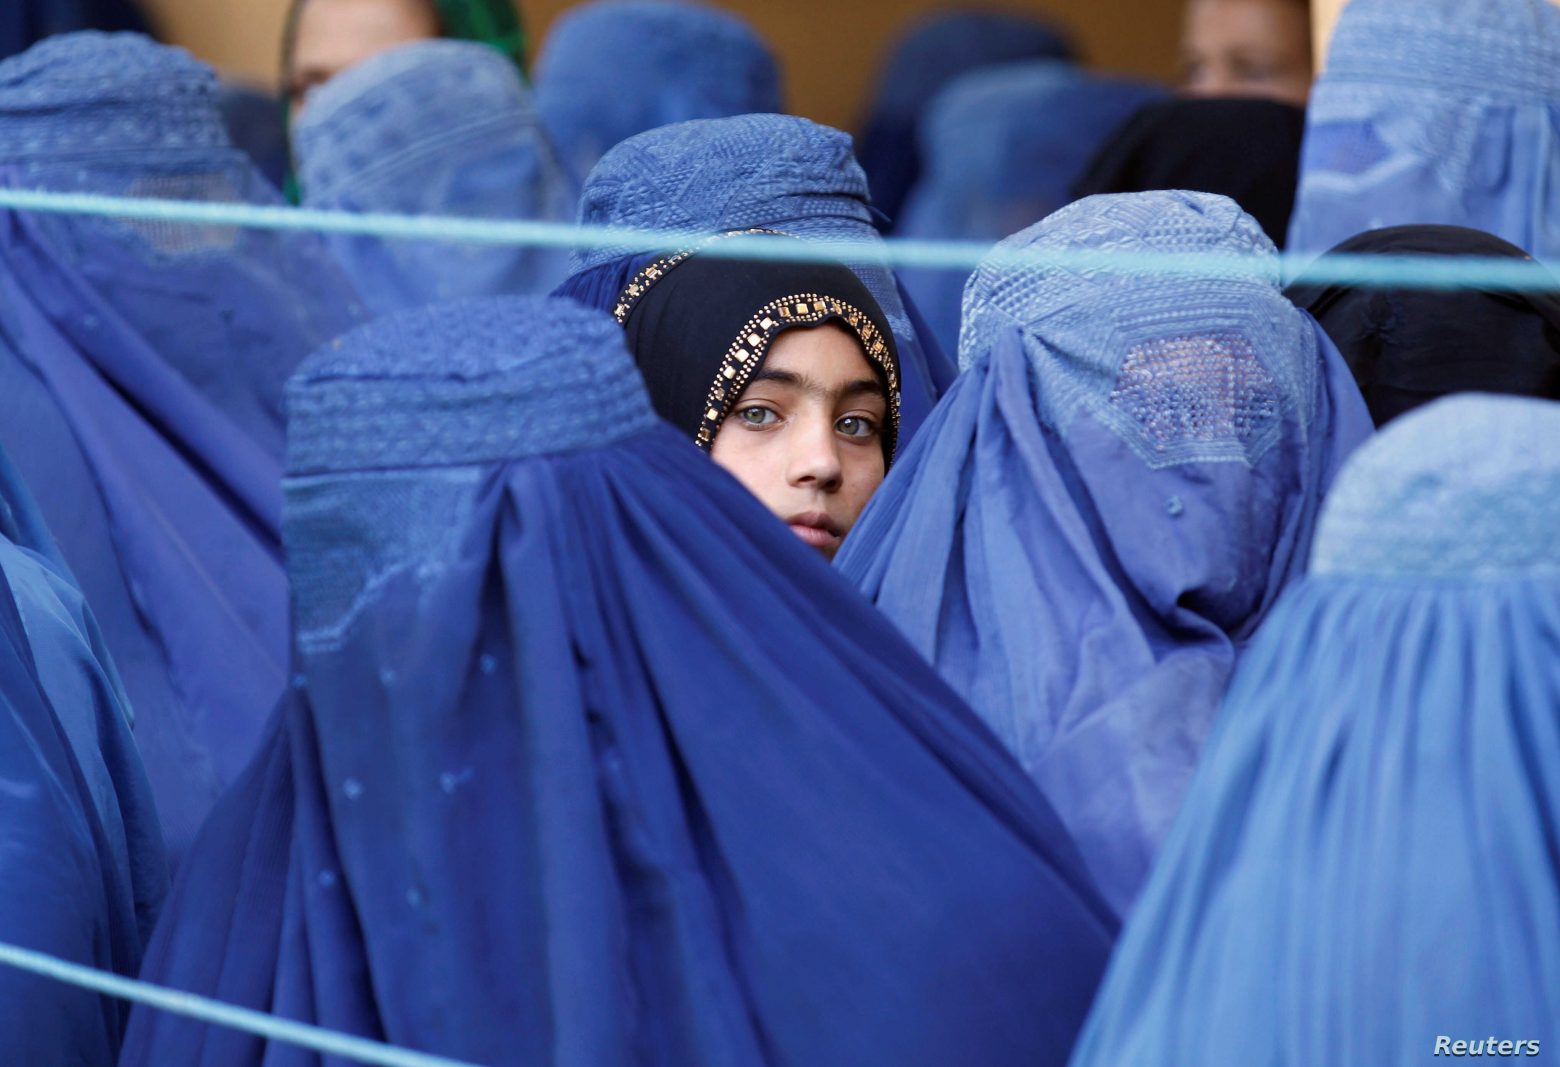 Αφγανιστάν - Η ζωή στη χώρα θα ρυθμίζεται από τους νόμους της σαρία, λέει ανώτατος ηγέτης των Ταλιμπάν